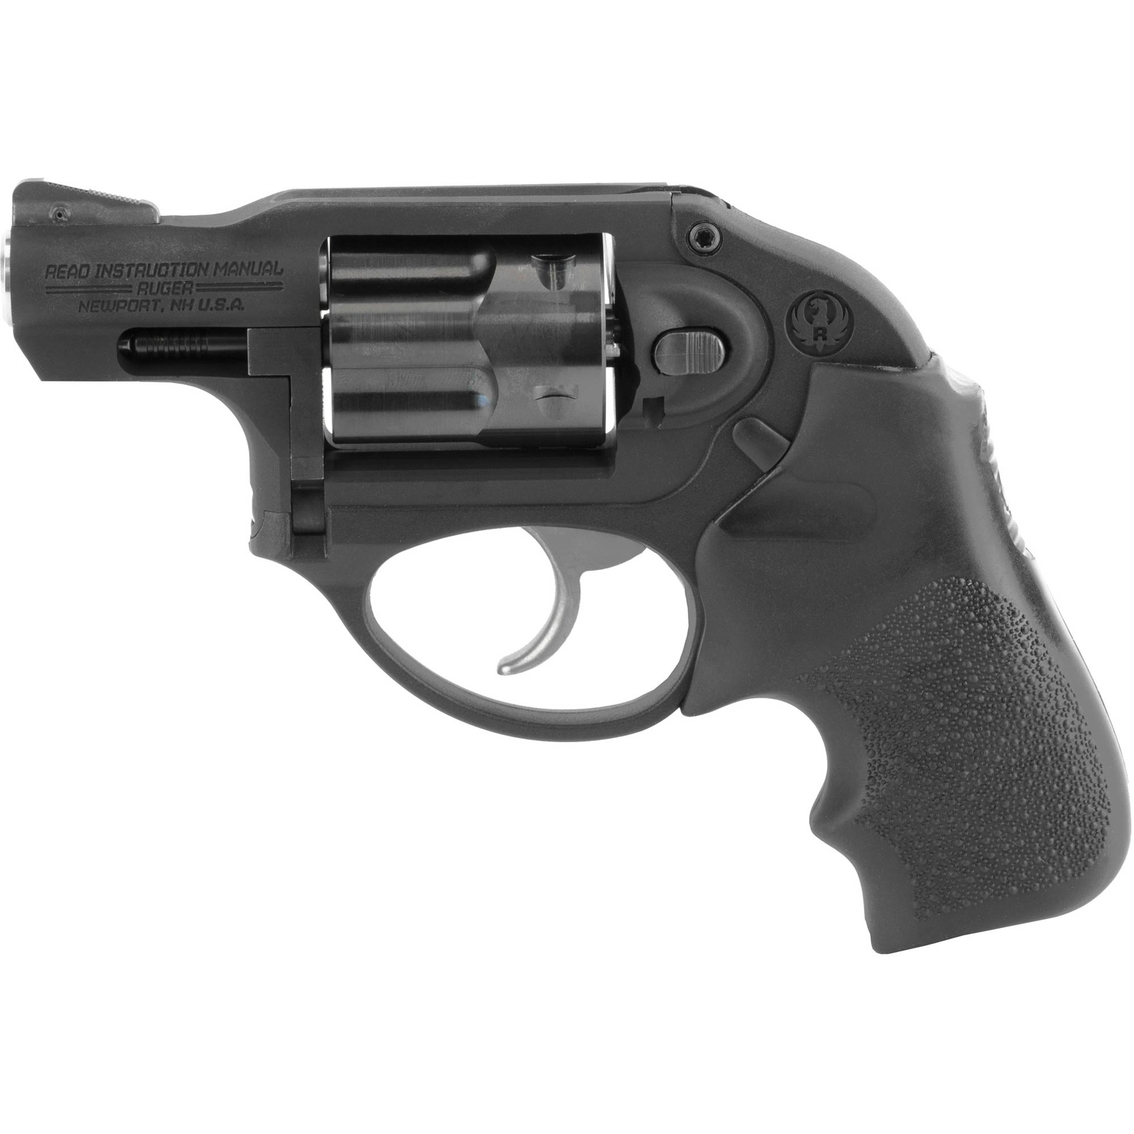 Ruger LCR 38 Special 1.875 in. Barrel 5 Rnd Revolver Black - Image 2 of 3